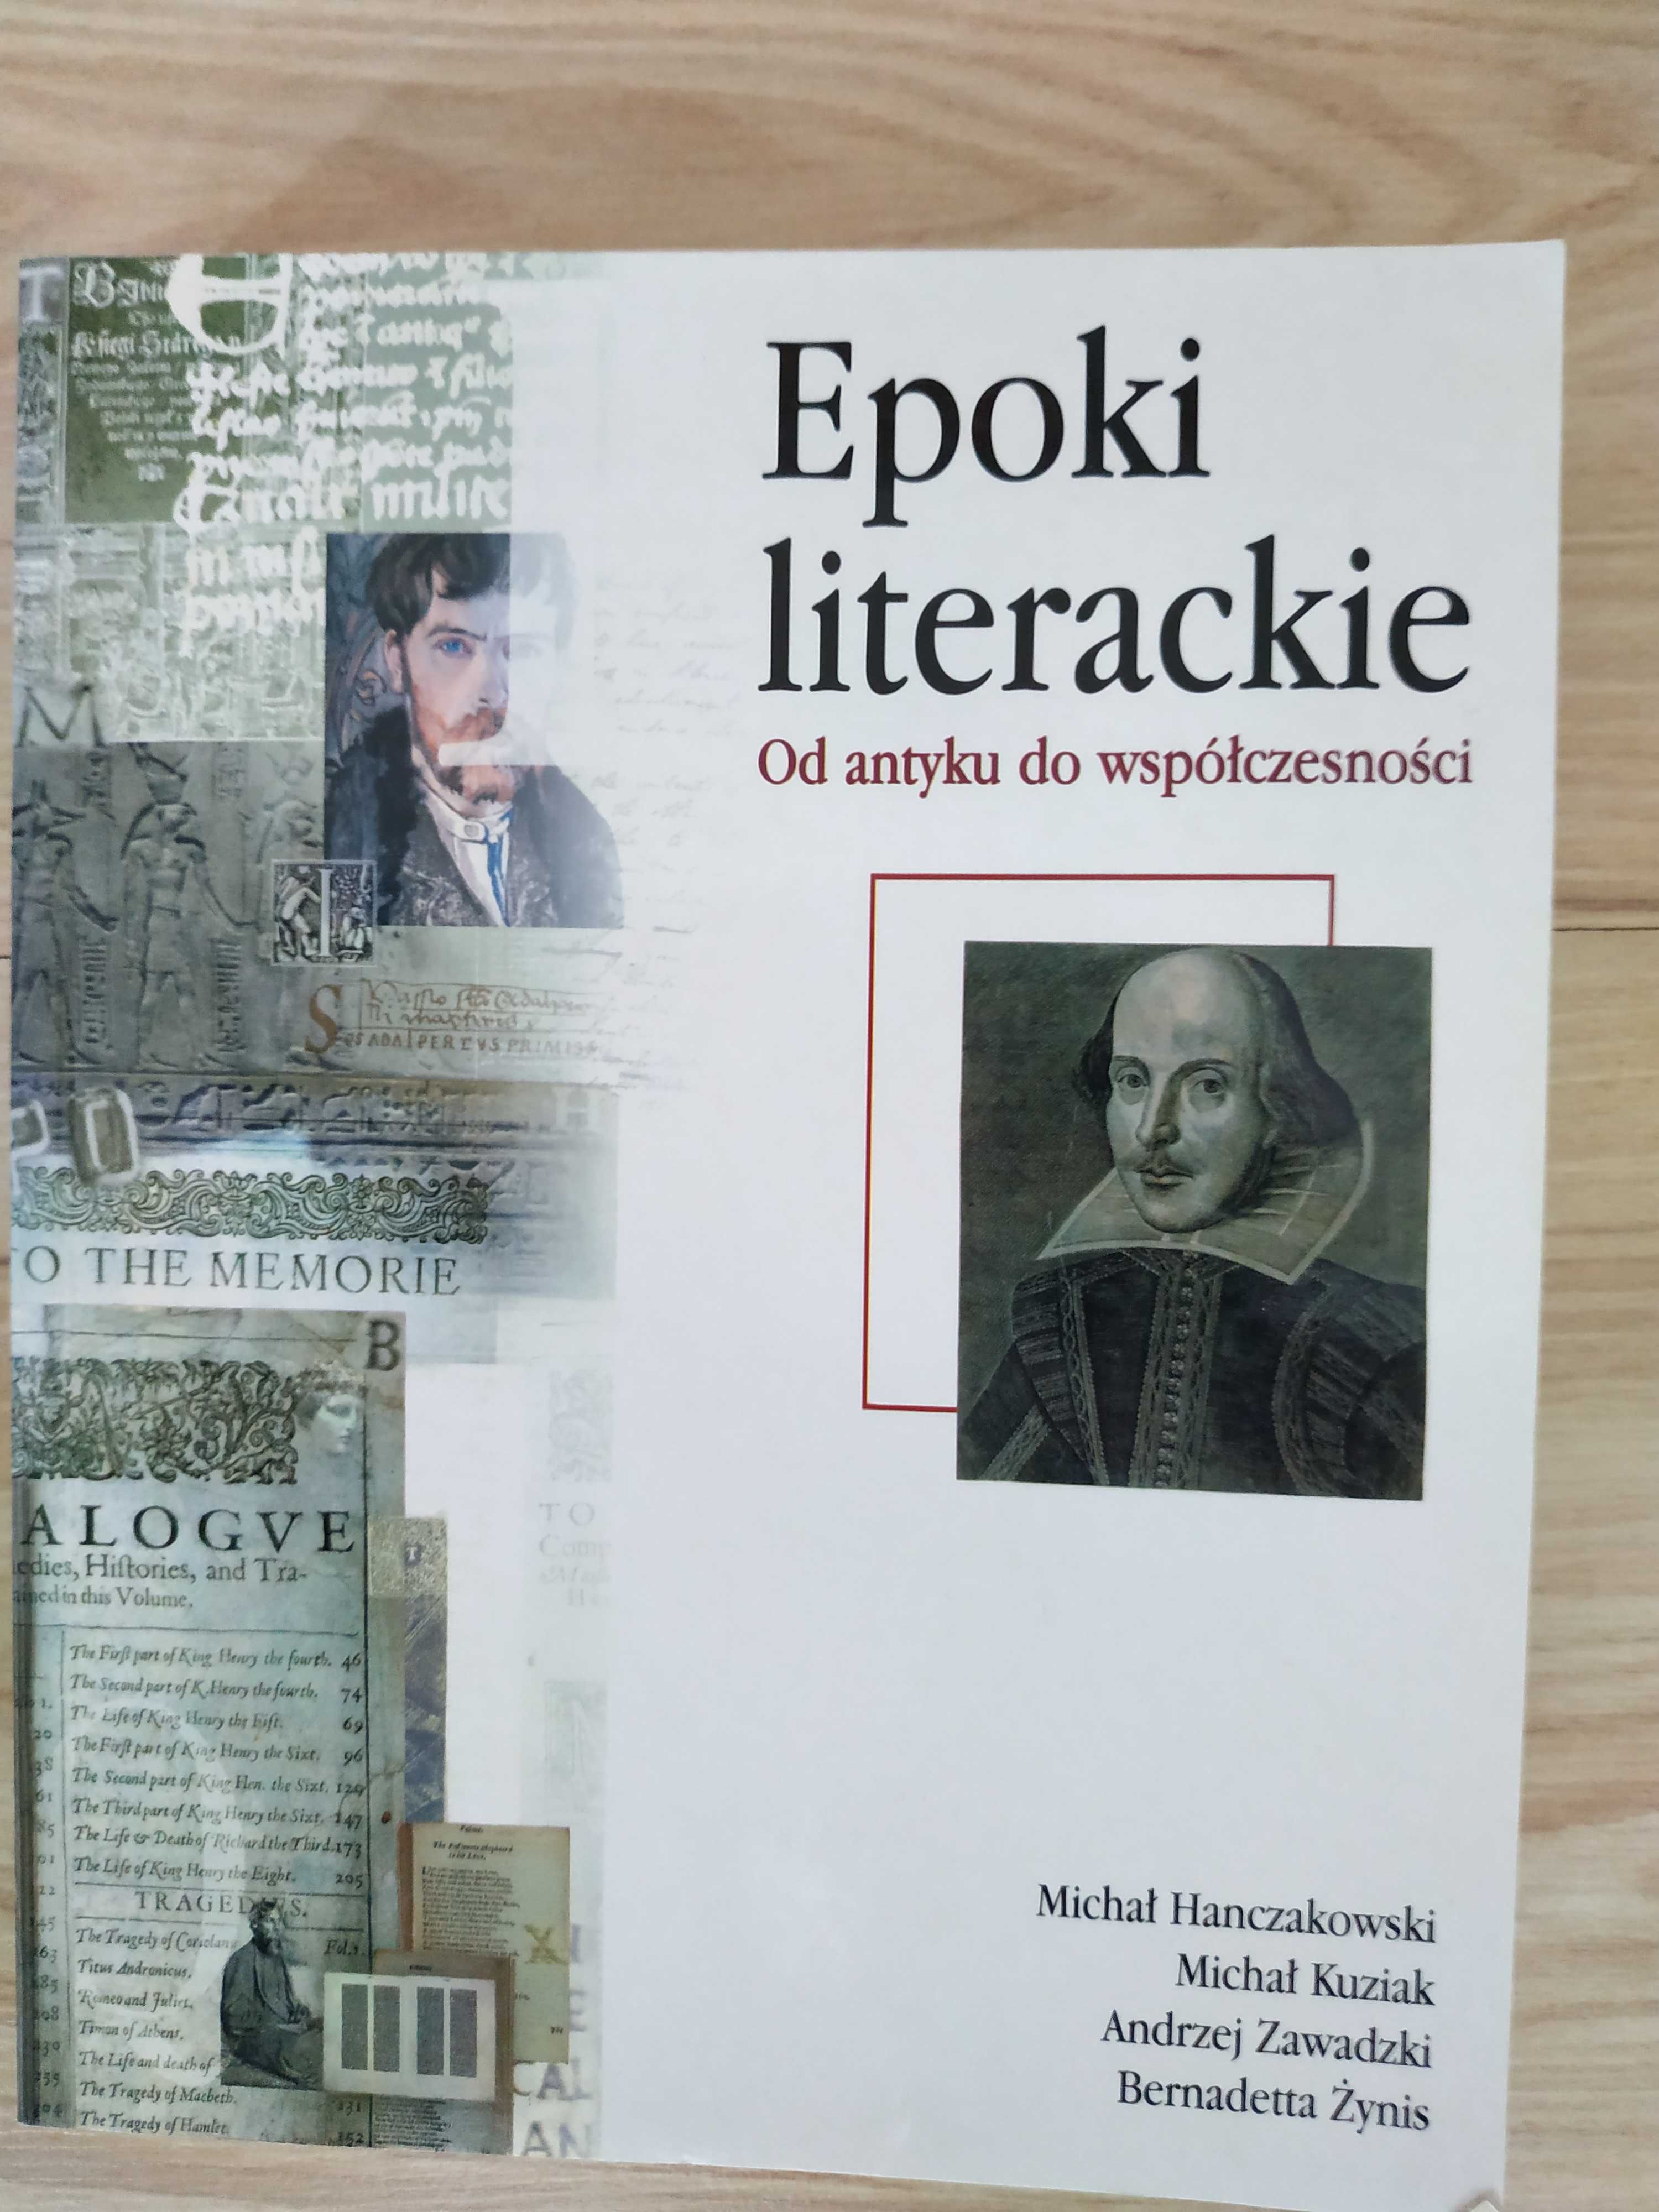 Sprzedam Epoki literackie od antyku do współczesności -M. Hanczakowski